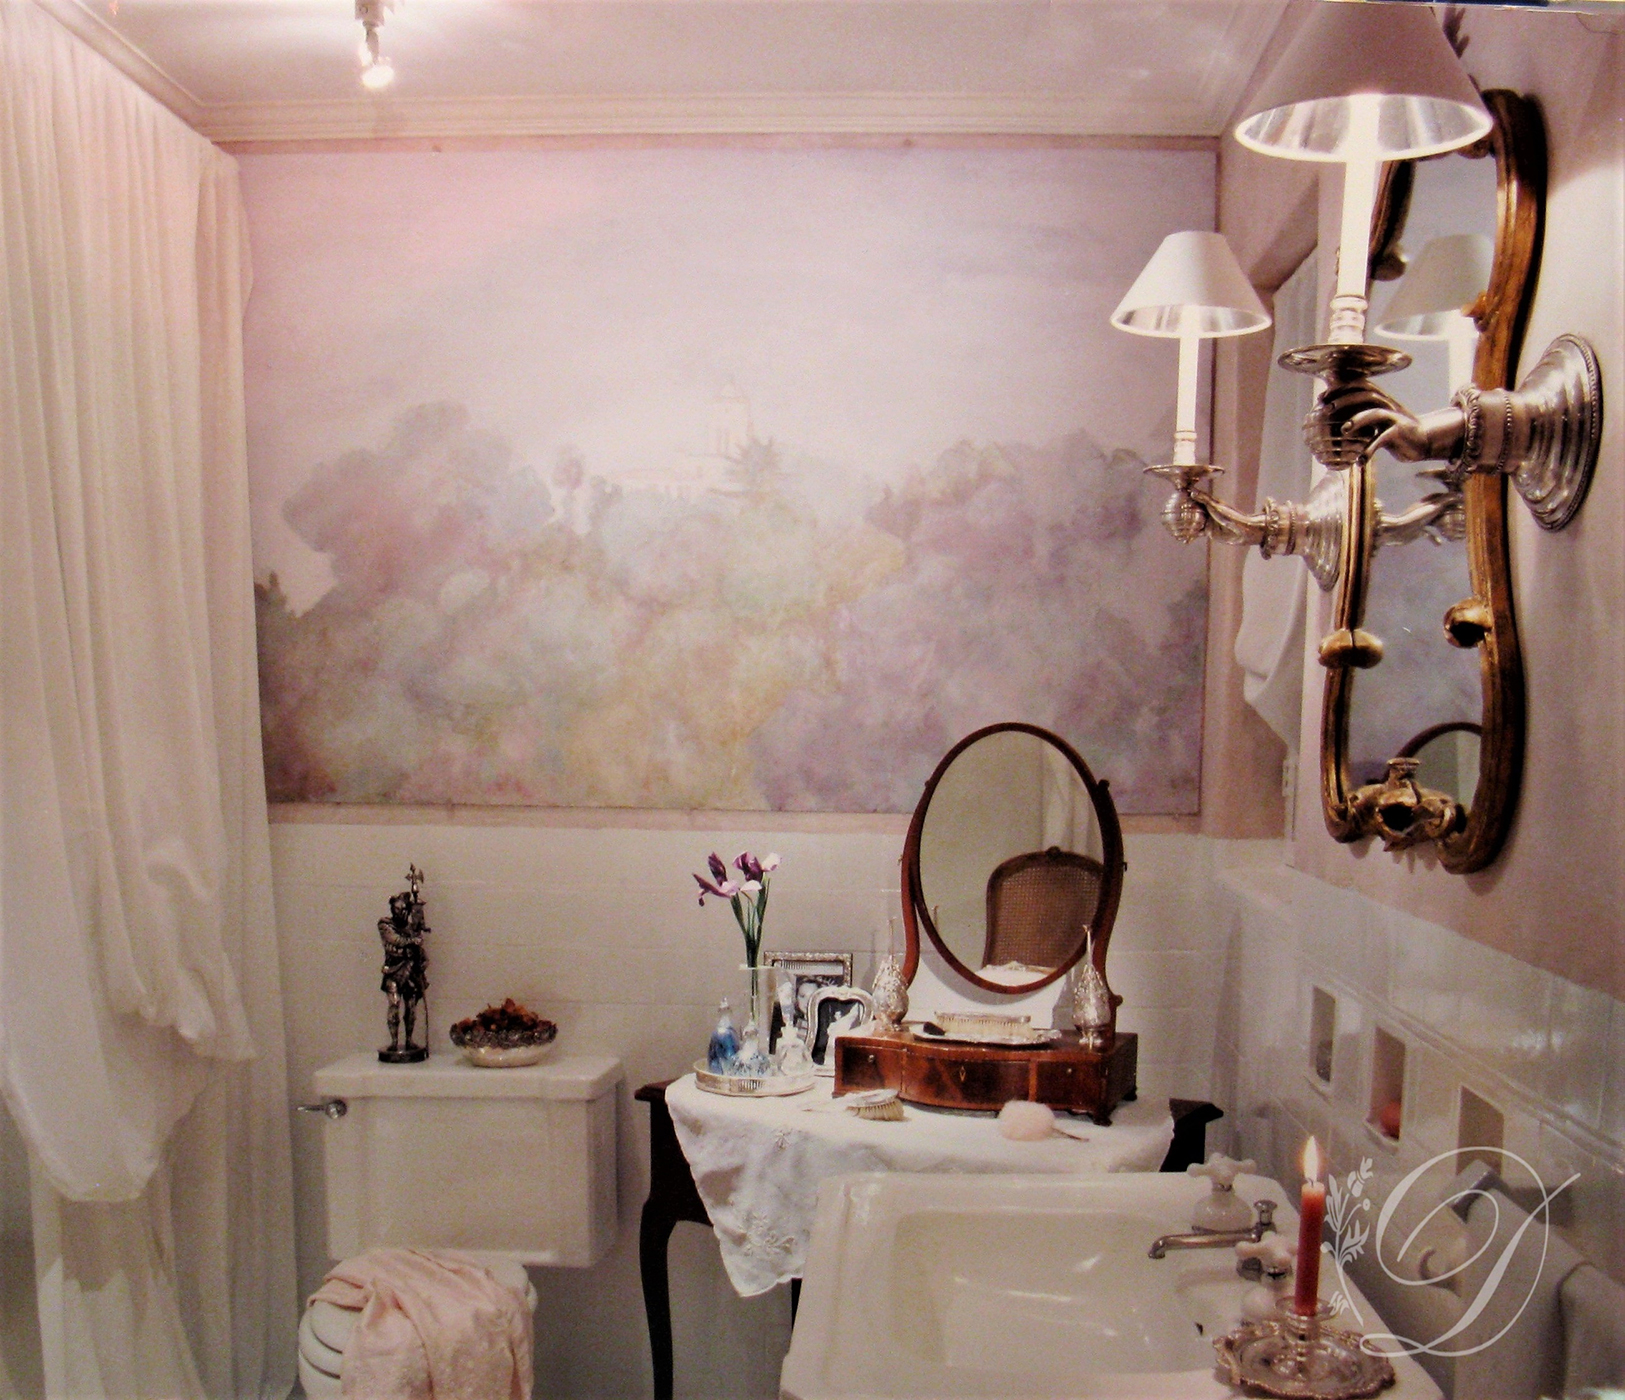 013_Bathrooms_-San-Marino-Guest-Bath.